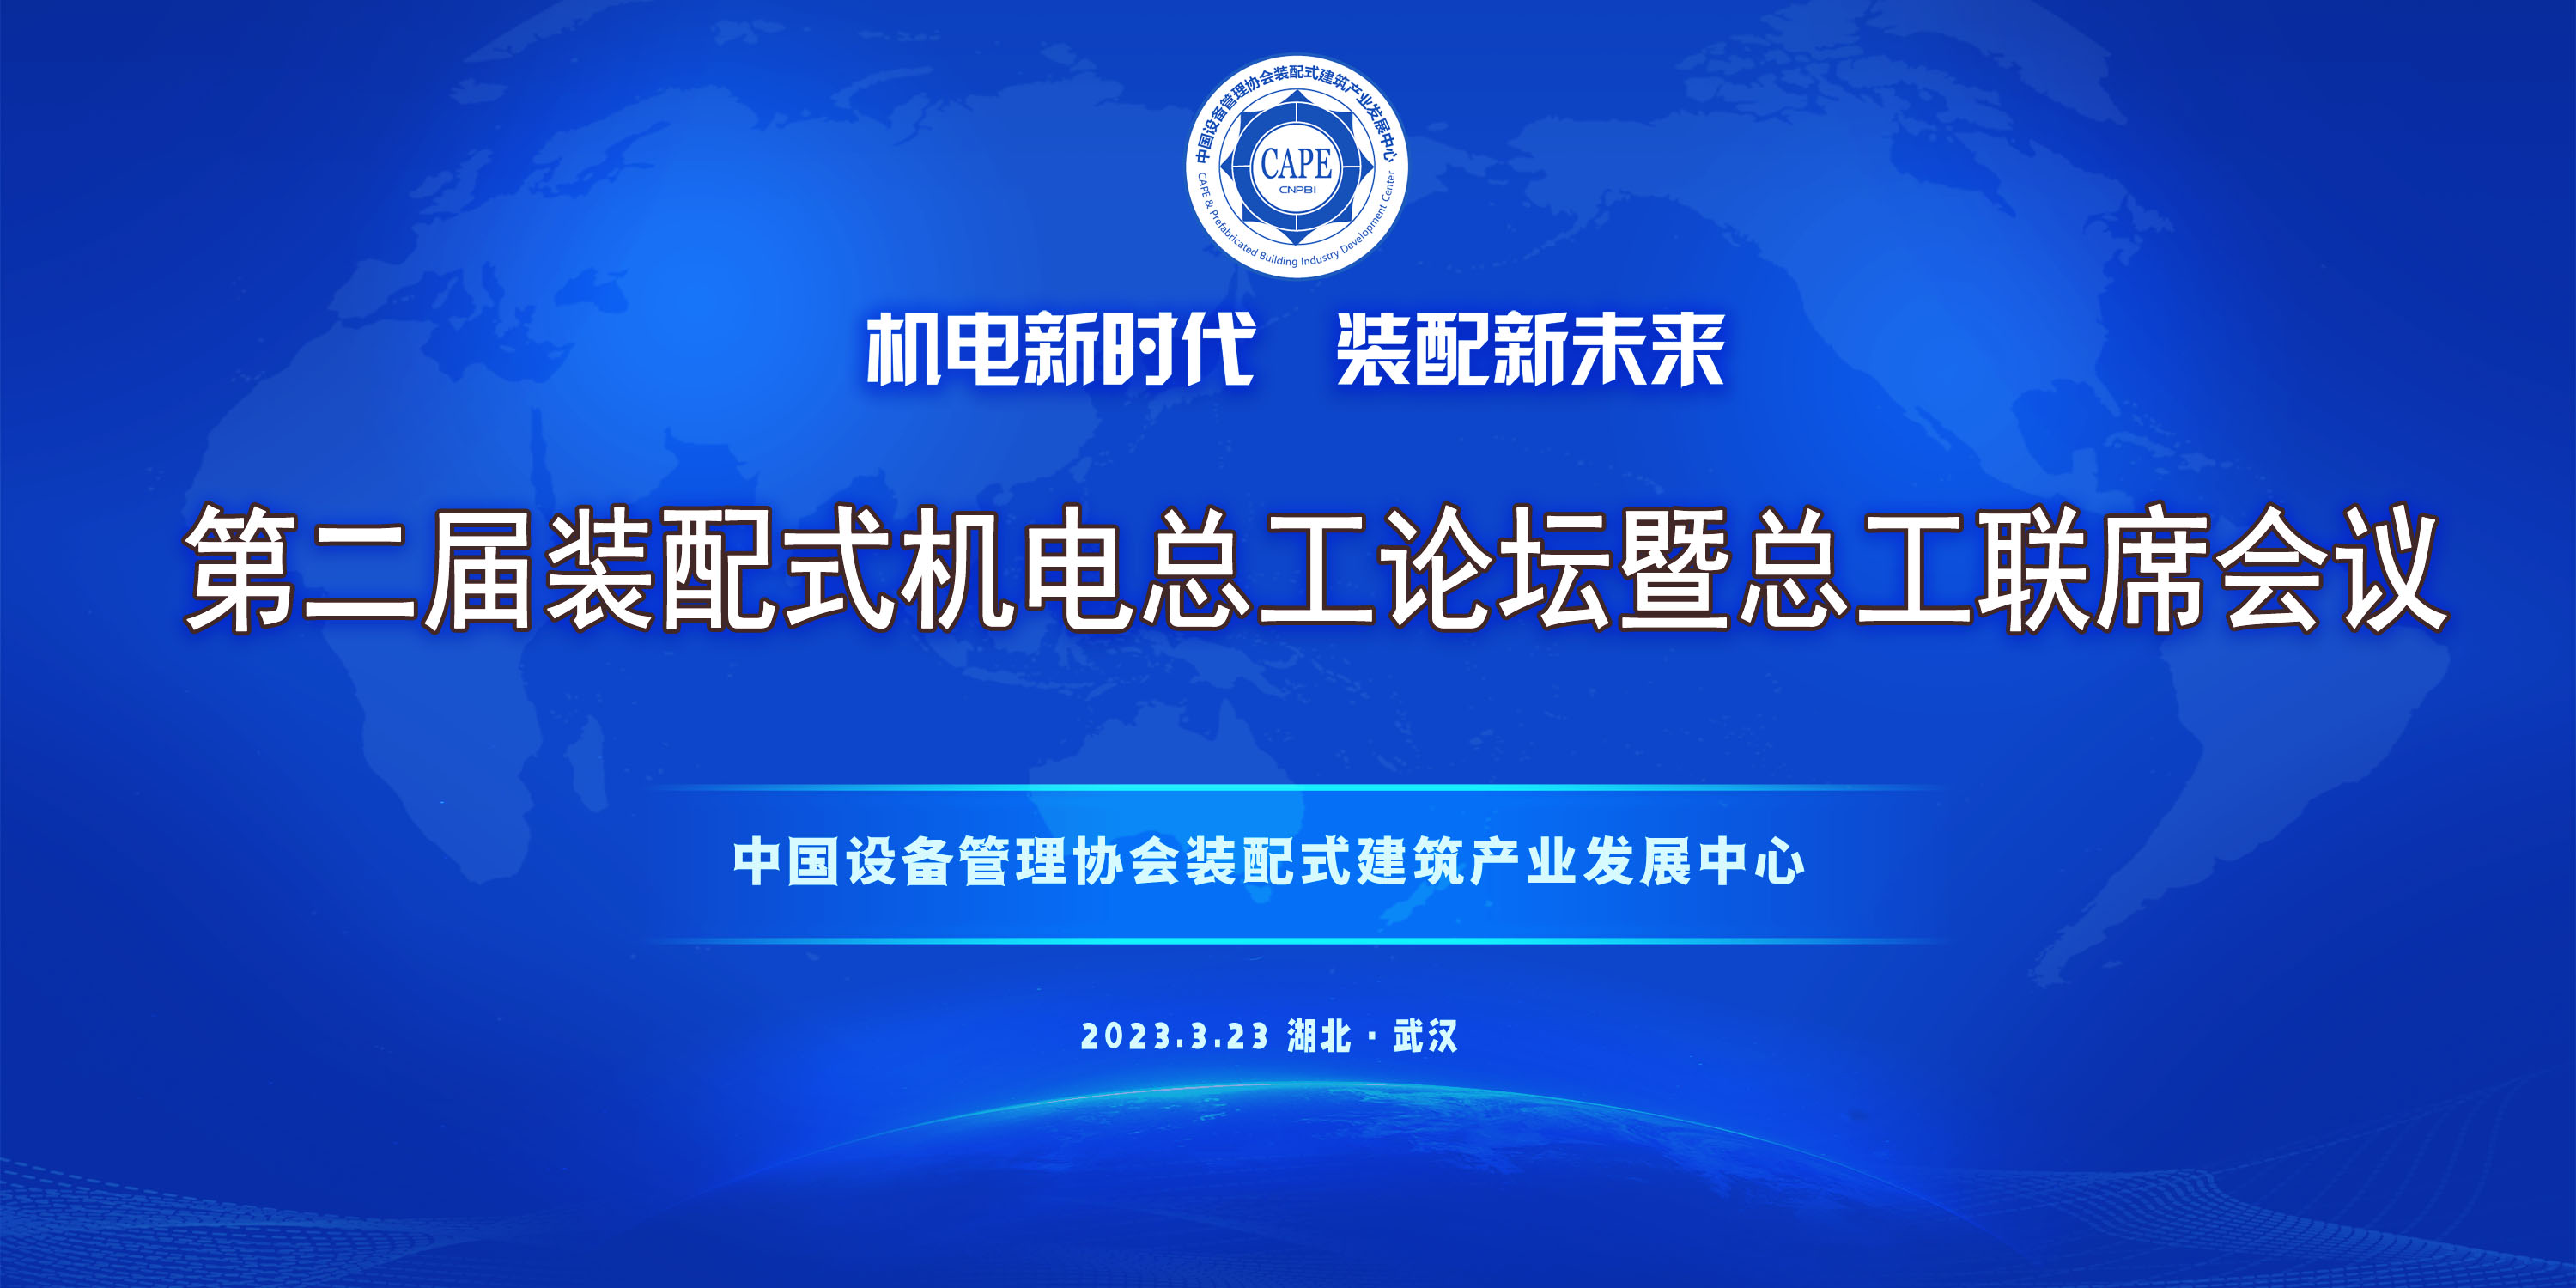 第二届装配式机电总工论坛暨总工联席会议在武汉召开！